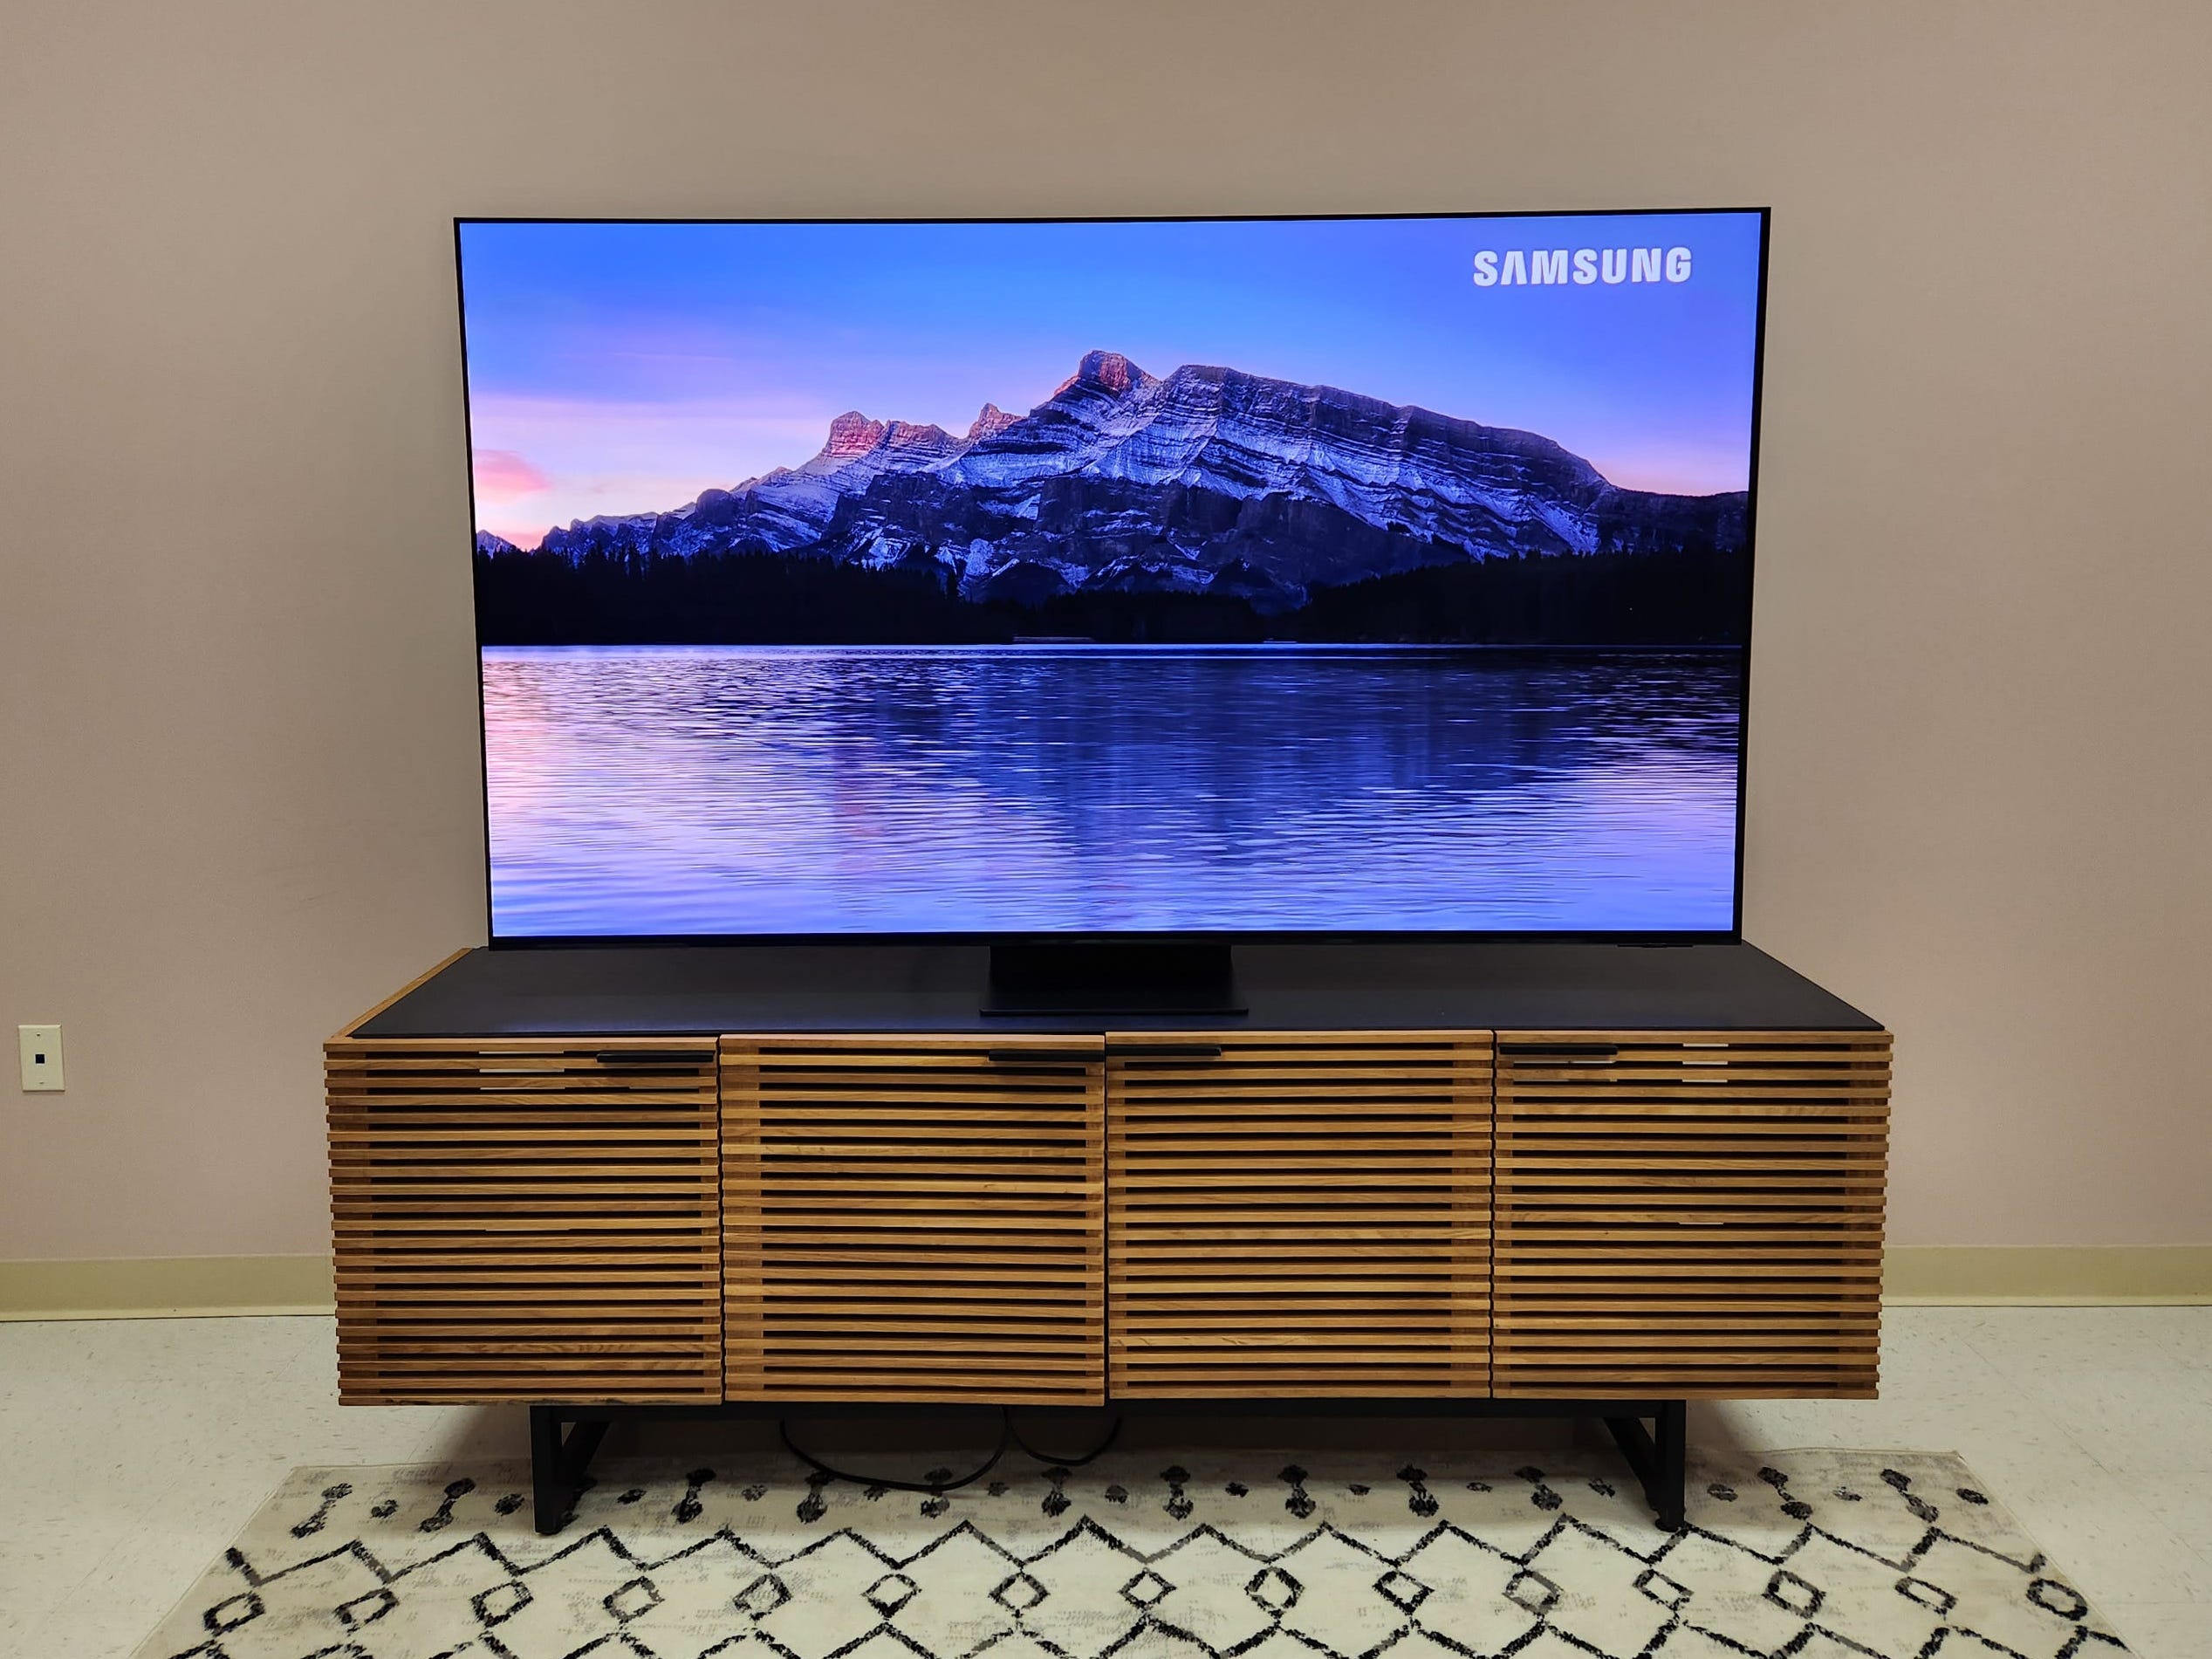 Eine Sequenz mit einer Bergkette mit Blick auf einen See, angezeigt auf einem Samsung S95C OLED-Fernseher, der auf einem Unterhaltungsständer steht.